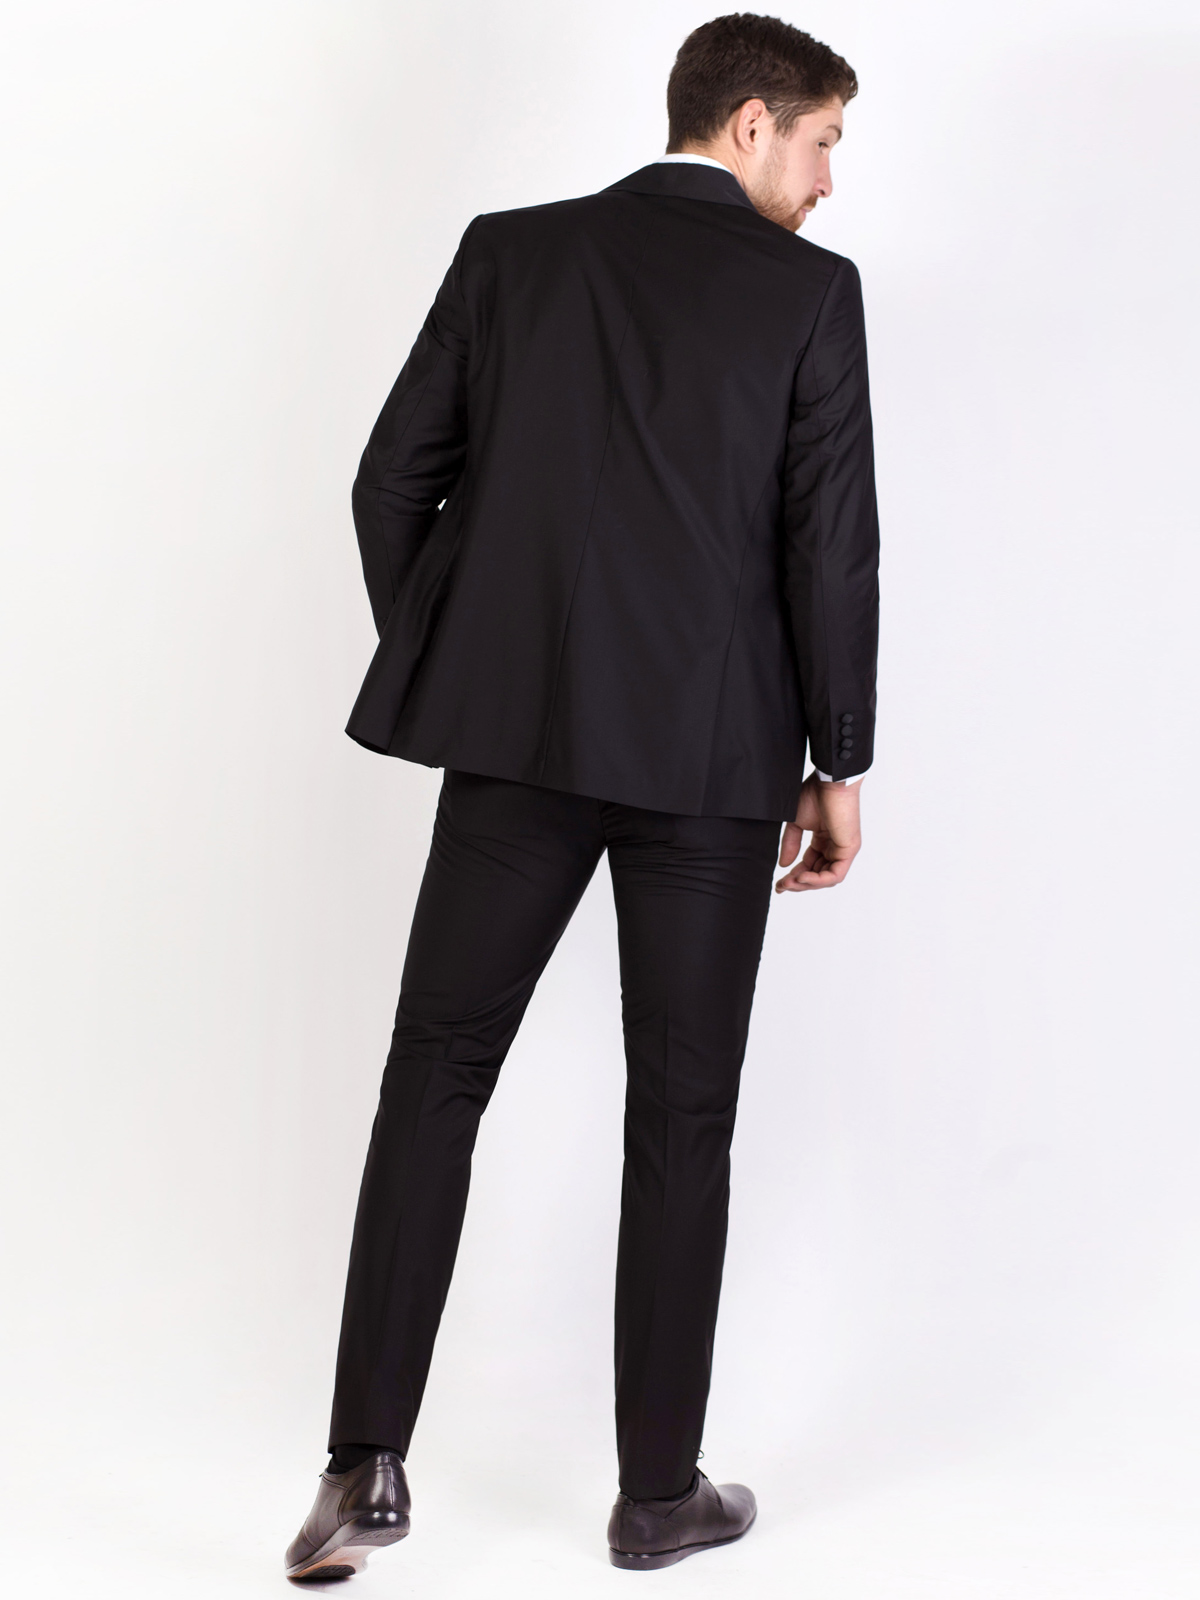 Μαύρο κοστούμι με σατέν κασκόλ με γιακά - 68050 € 164.79 img4